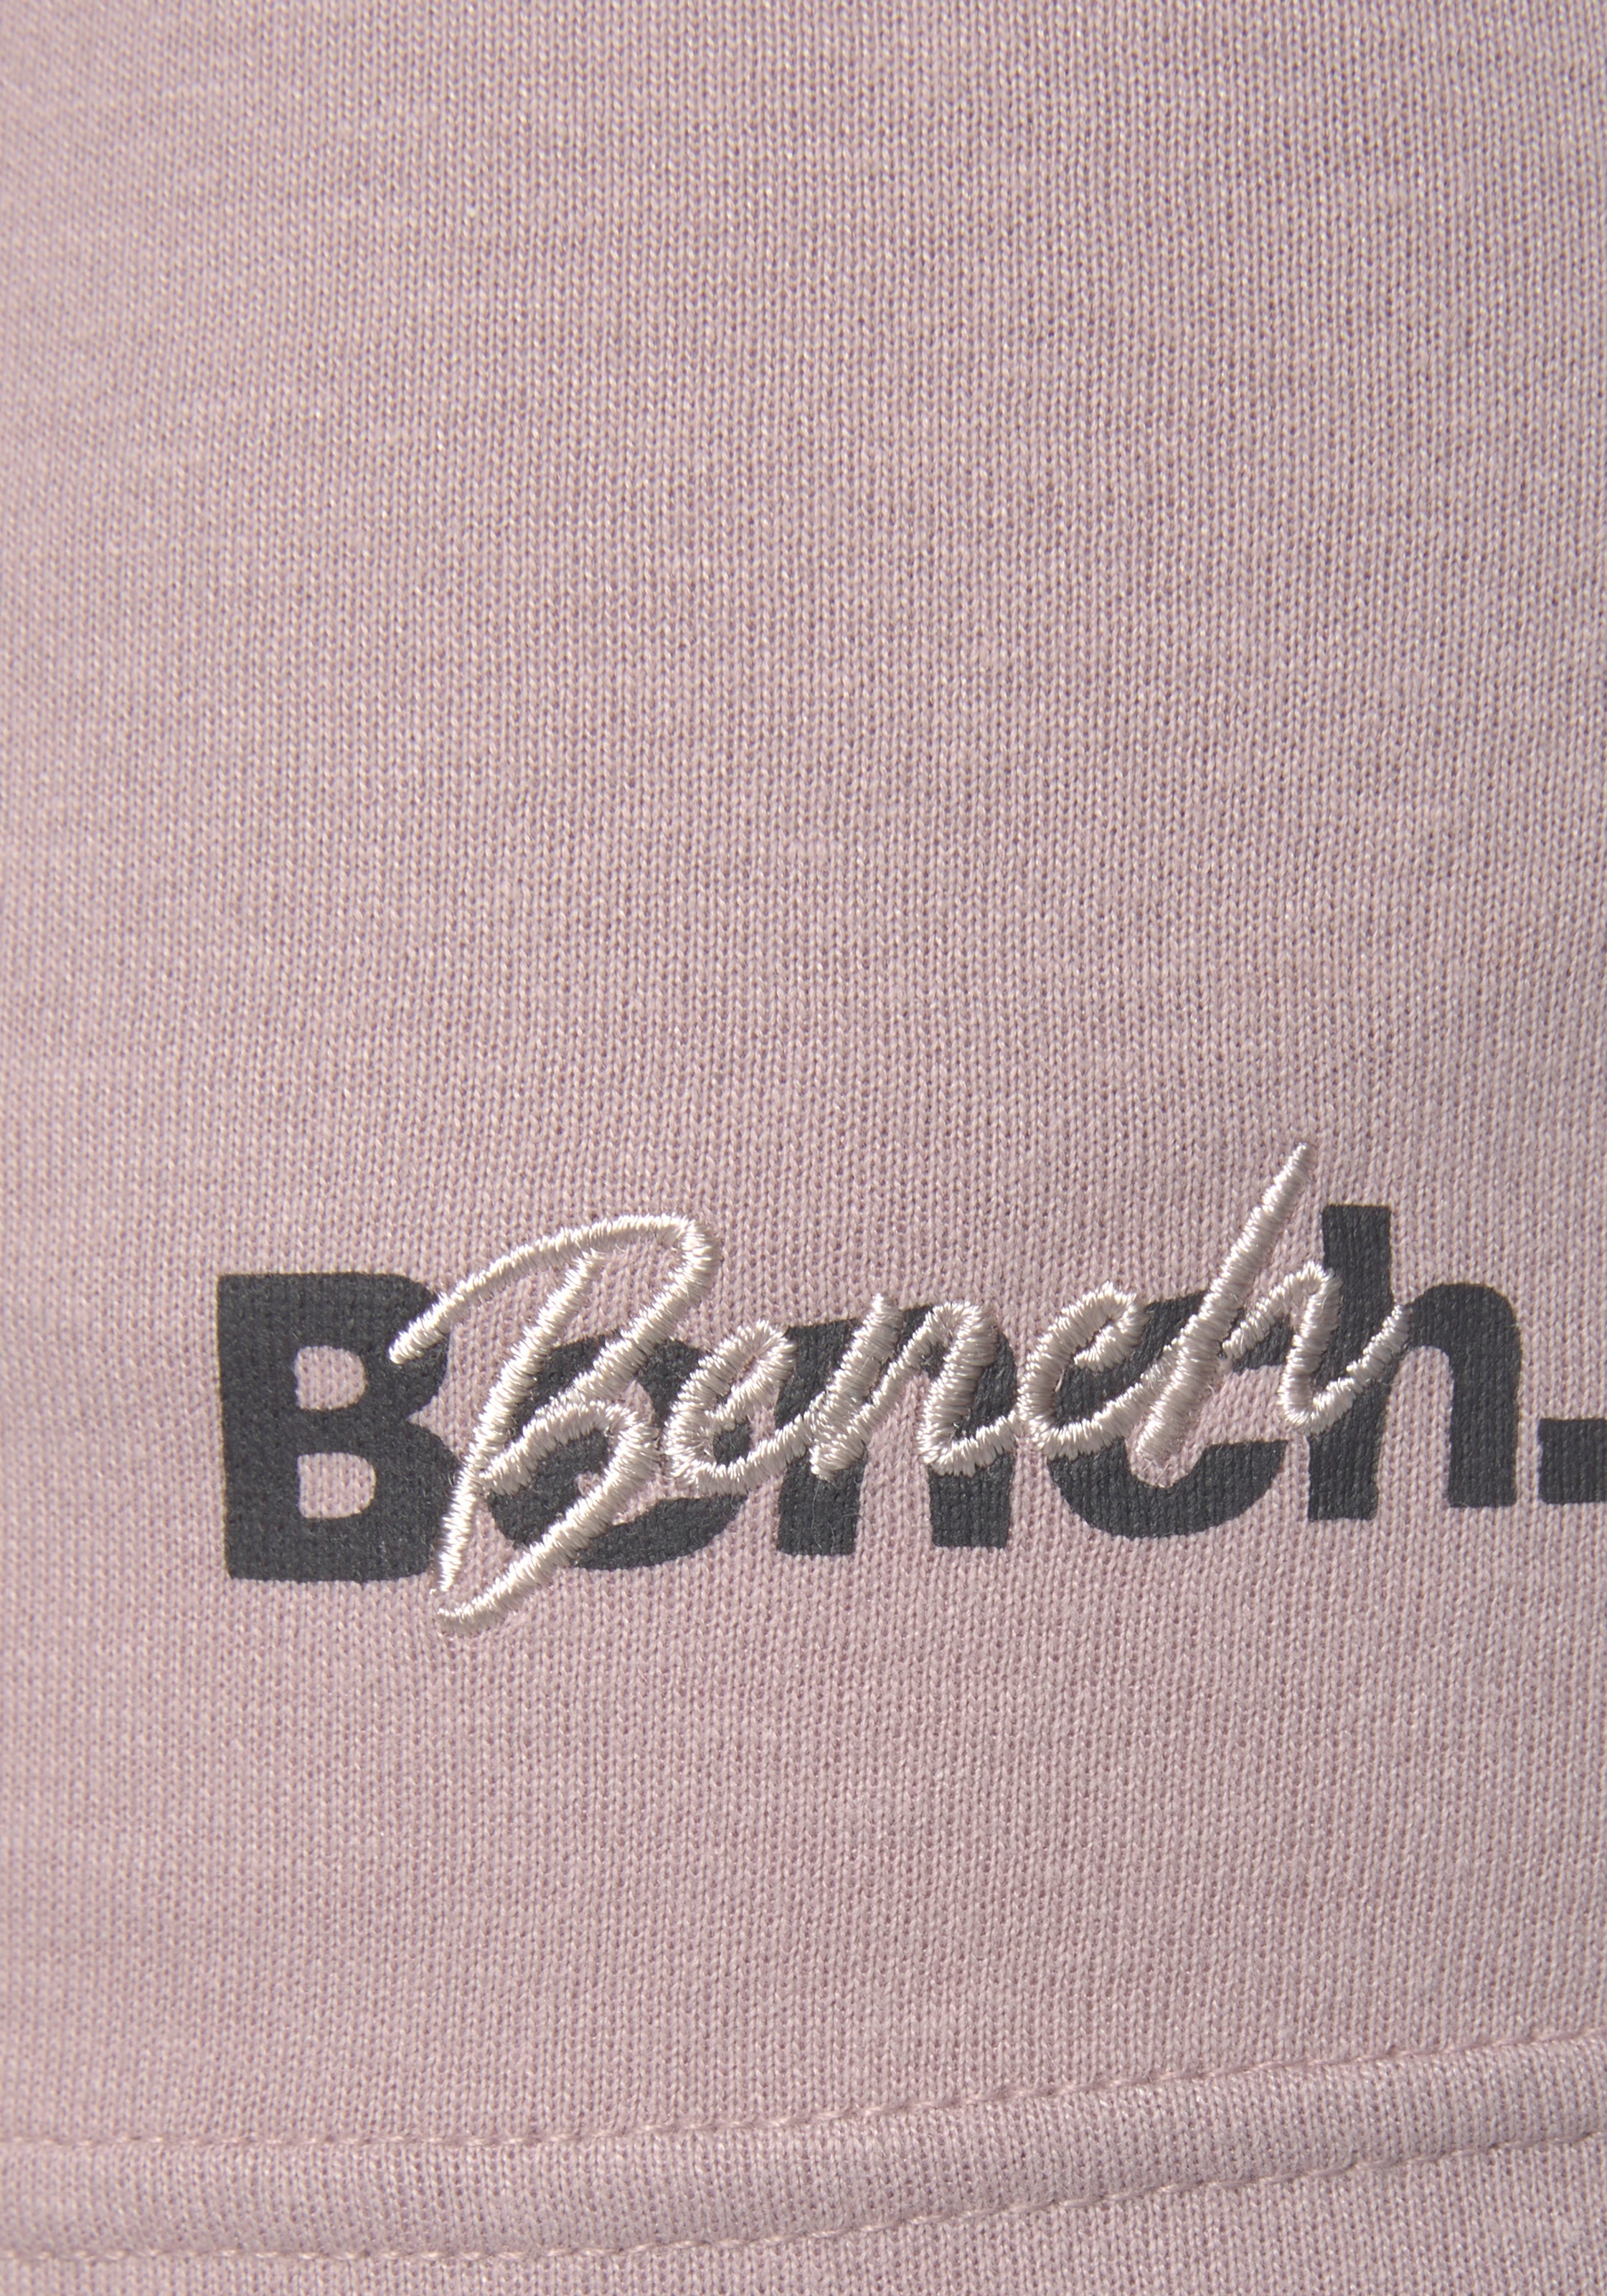 Shorts, Loungewear Logodruck OTTOversand Stickerei und bei mit Bench.